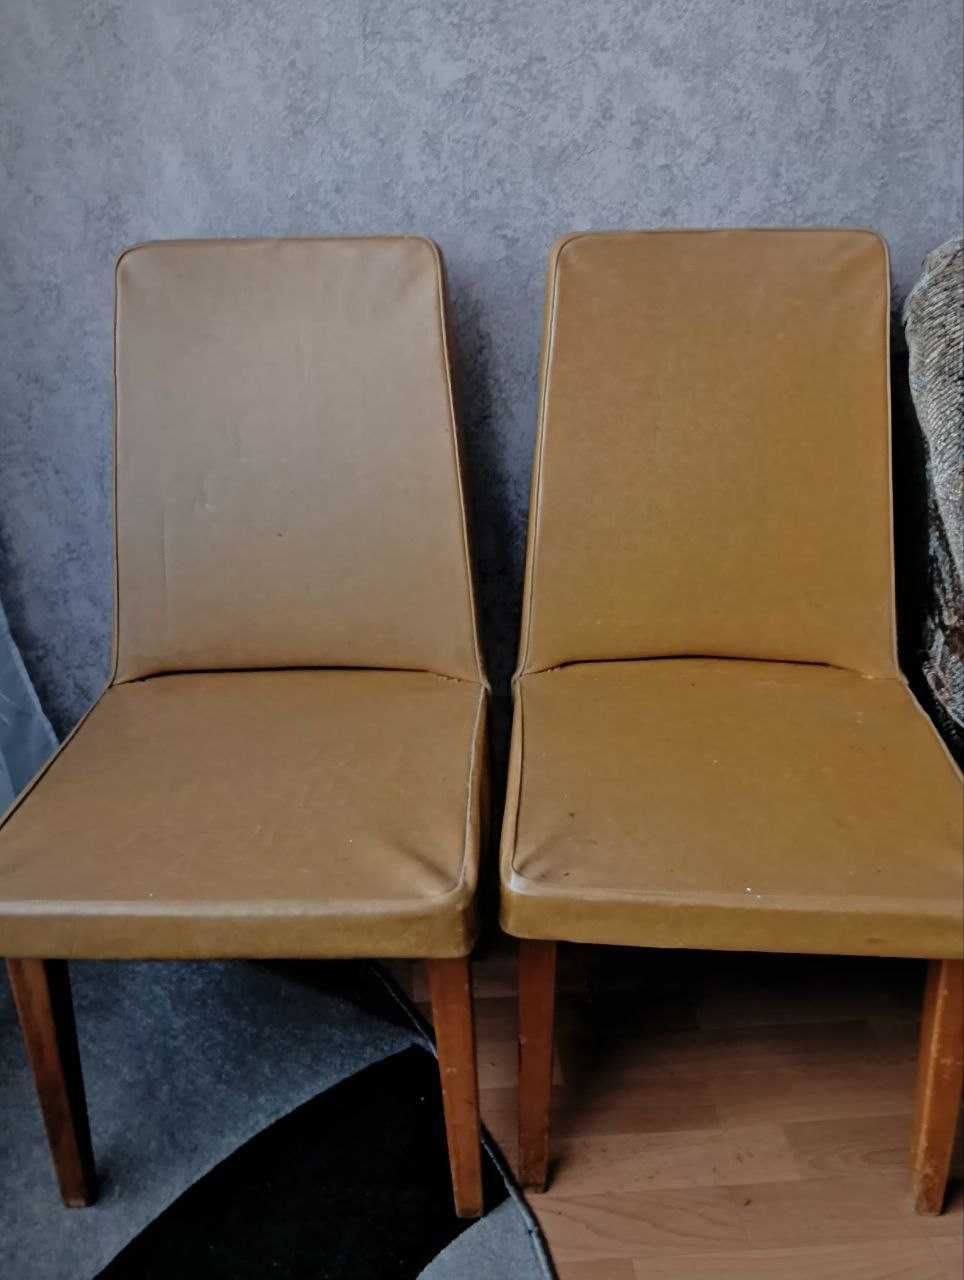 Надежное кресло со спинкой